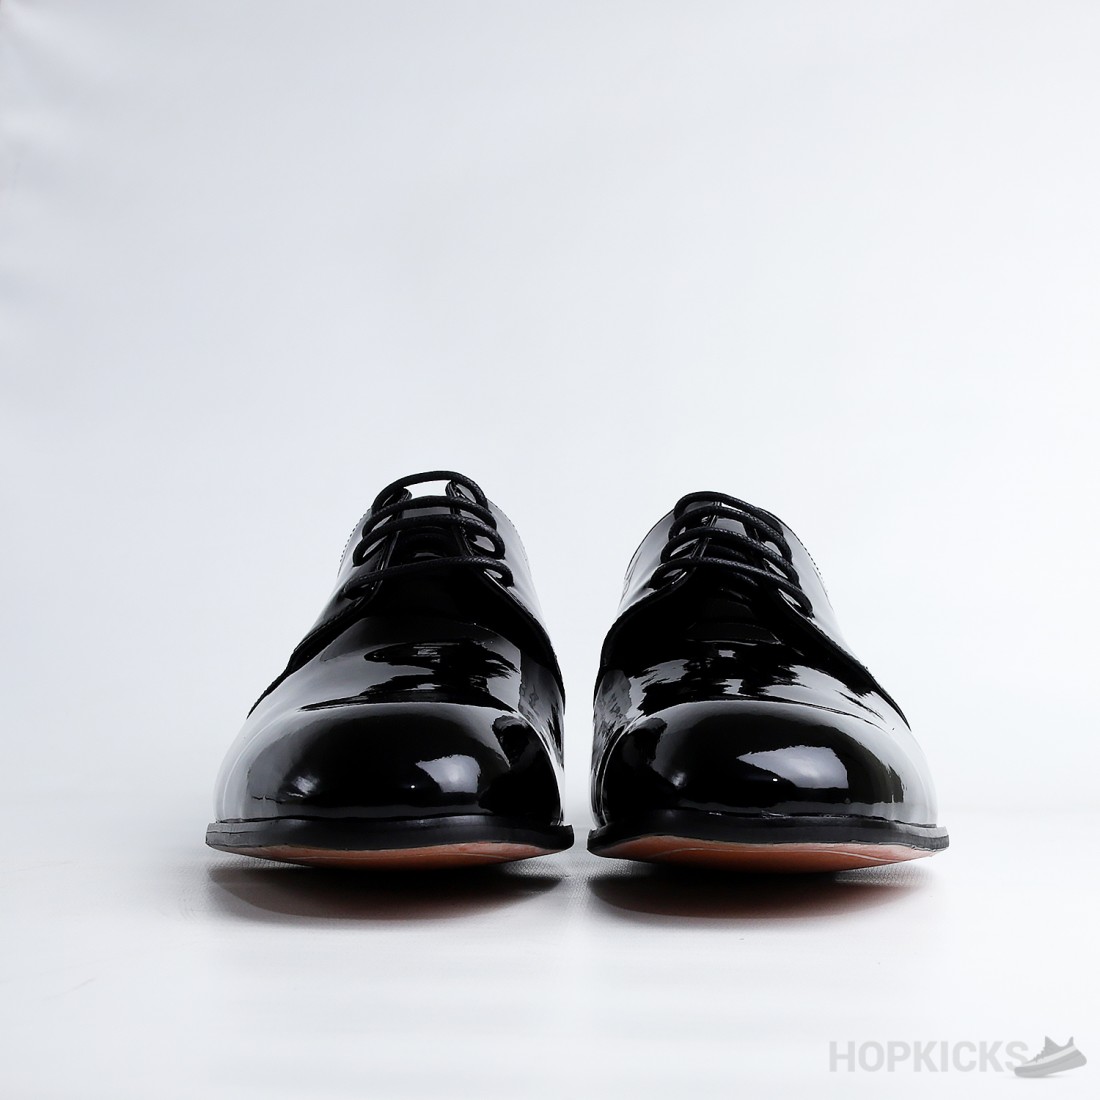 Louis Vuitton, Shoes, Louis Vuitton Grenelle Richelieu Dress Shoe